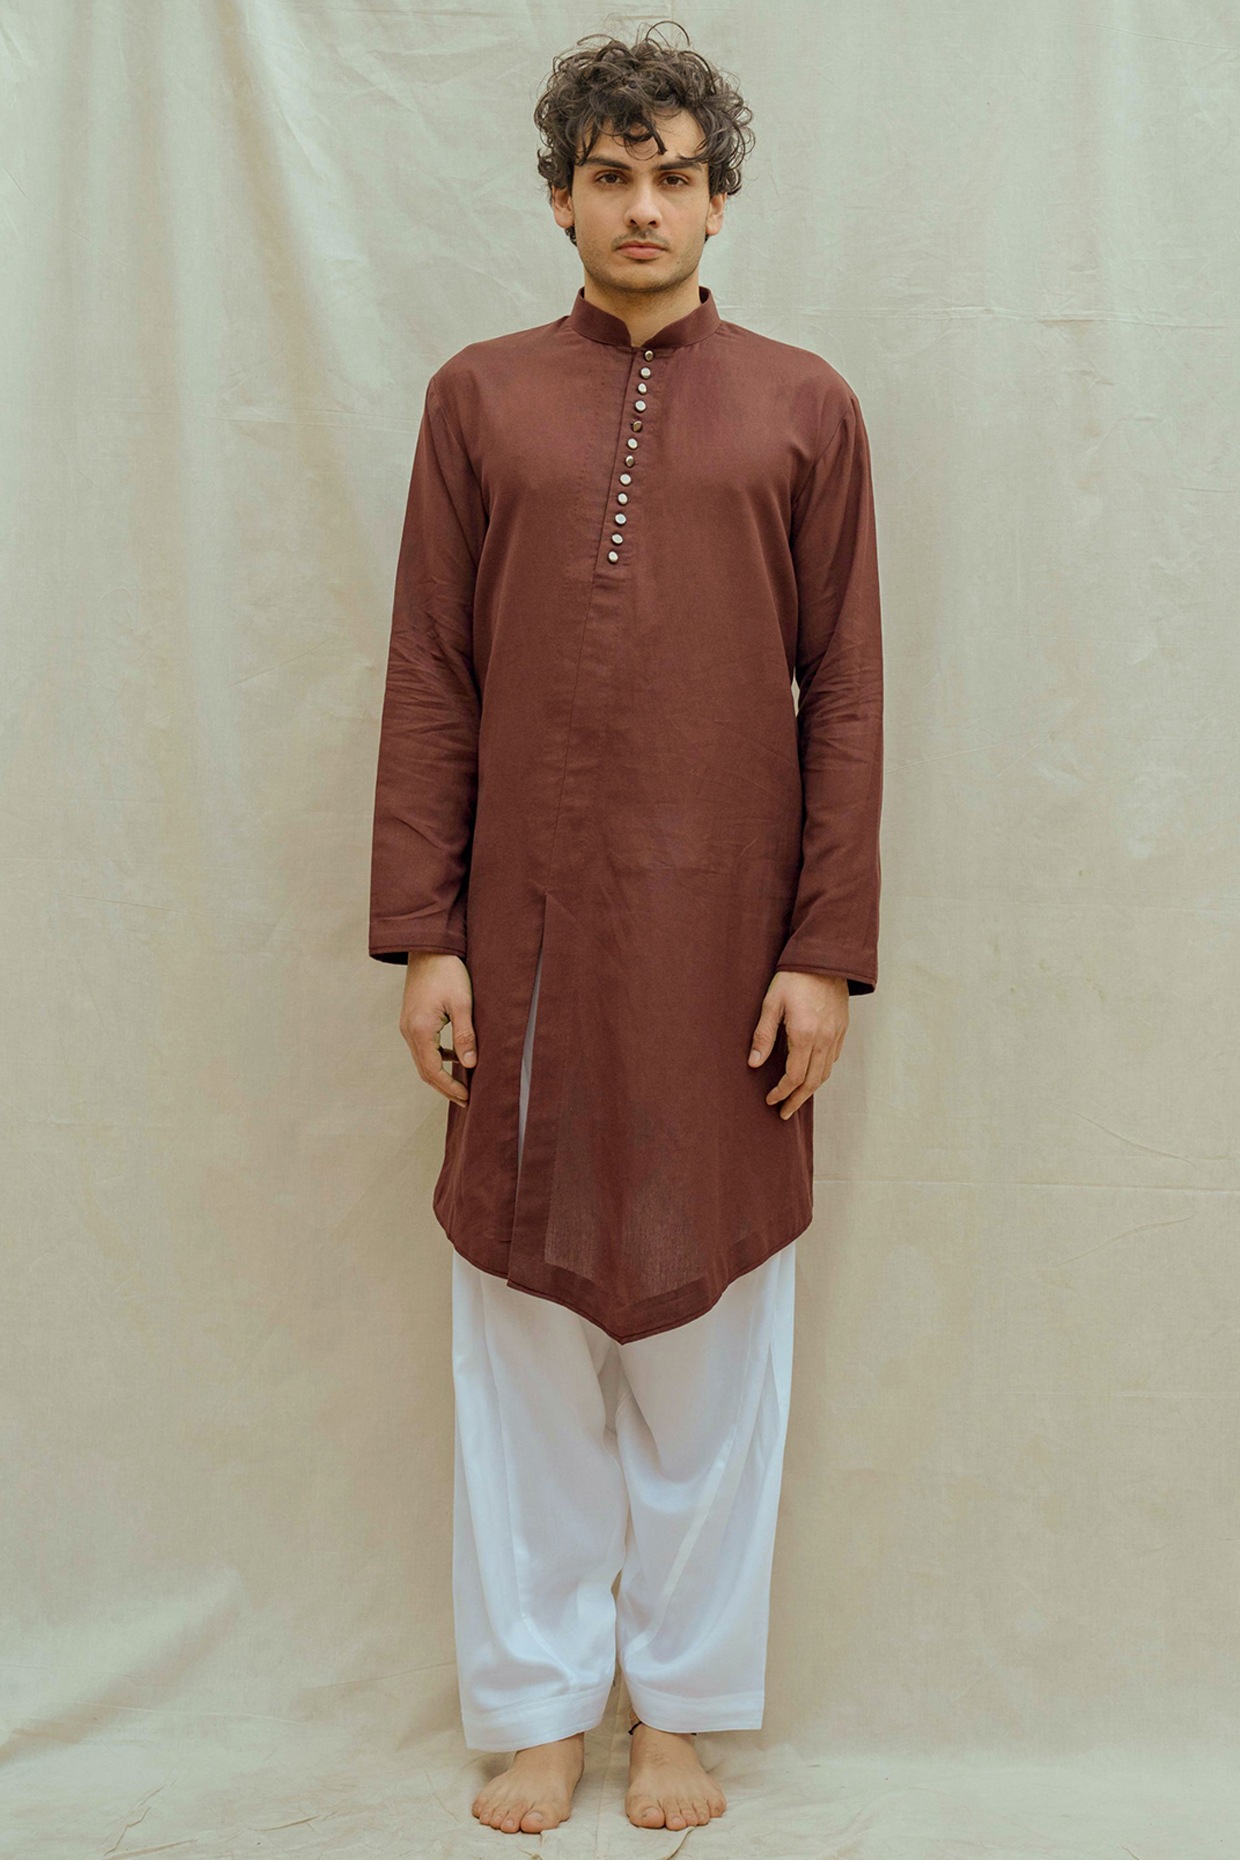 Red Plain Color Indian Churidar Pants 100% Cotton-Tights Kurti Salwar  Kameez | eBay